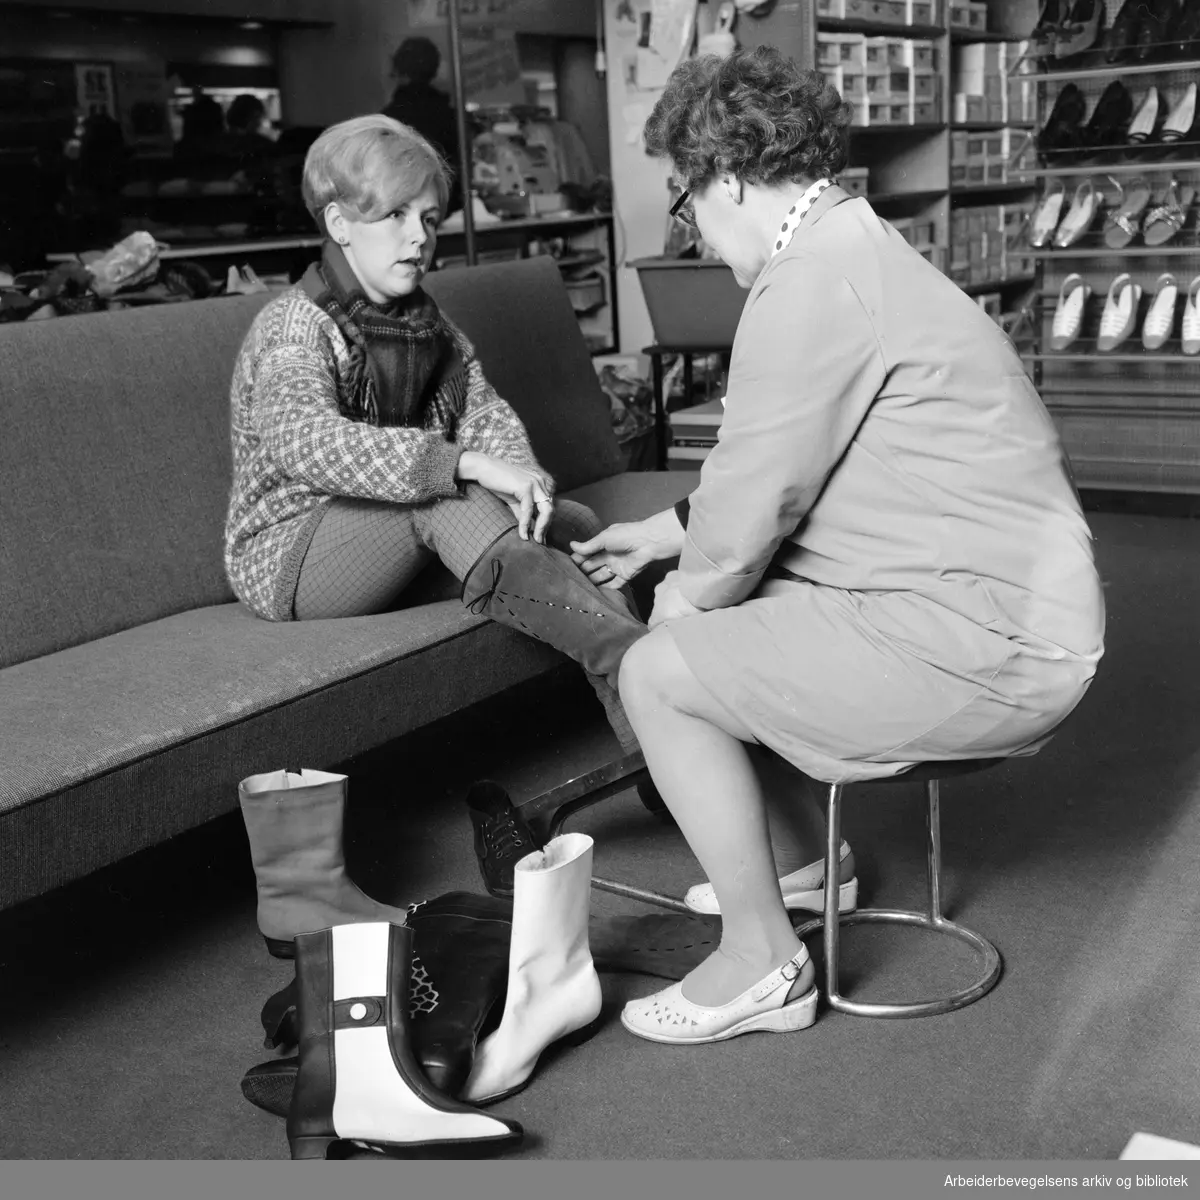 Skotøysalg. Berit Johansen (til venstre) prøver støvletter, assistert av Randi Thoresen i en skøtøyforretning i Storgata. Januar 1968